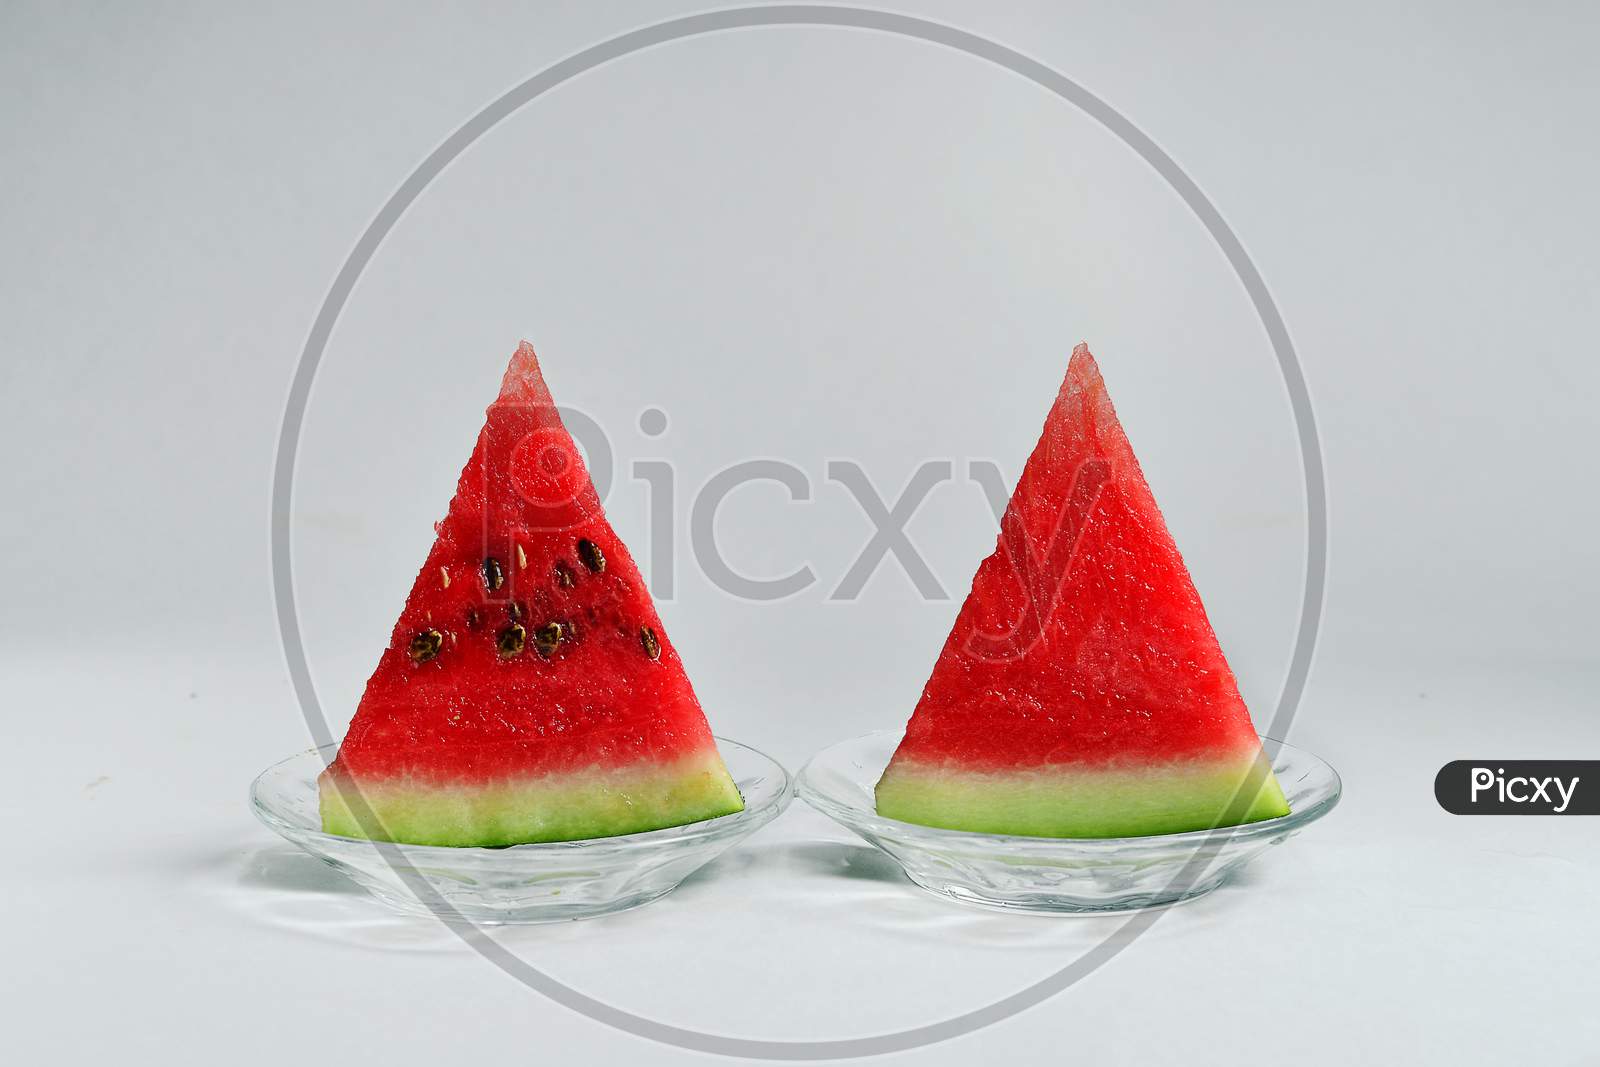 Watermelon Sweet